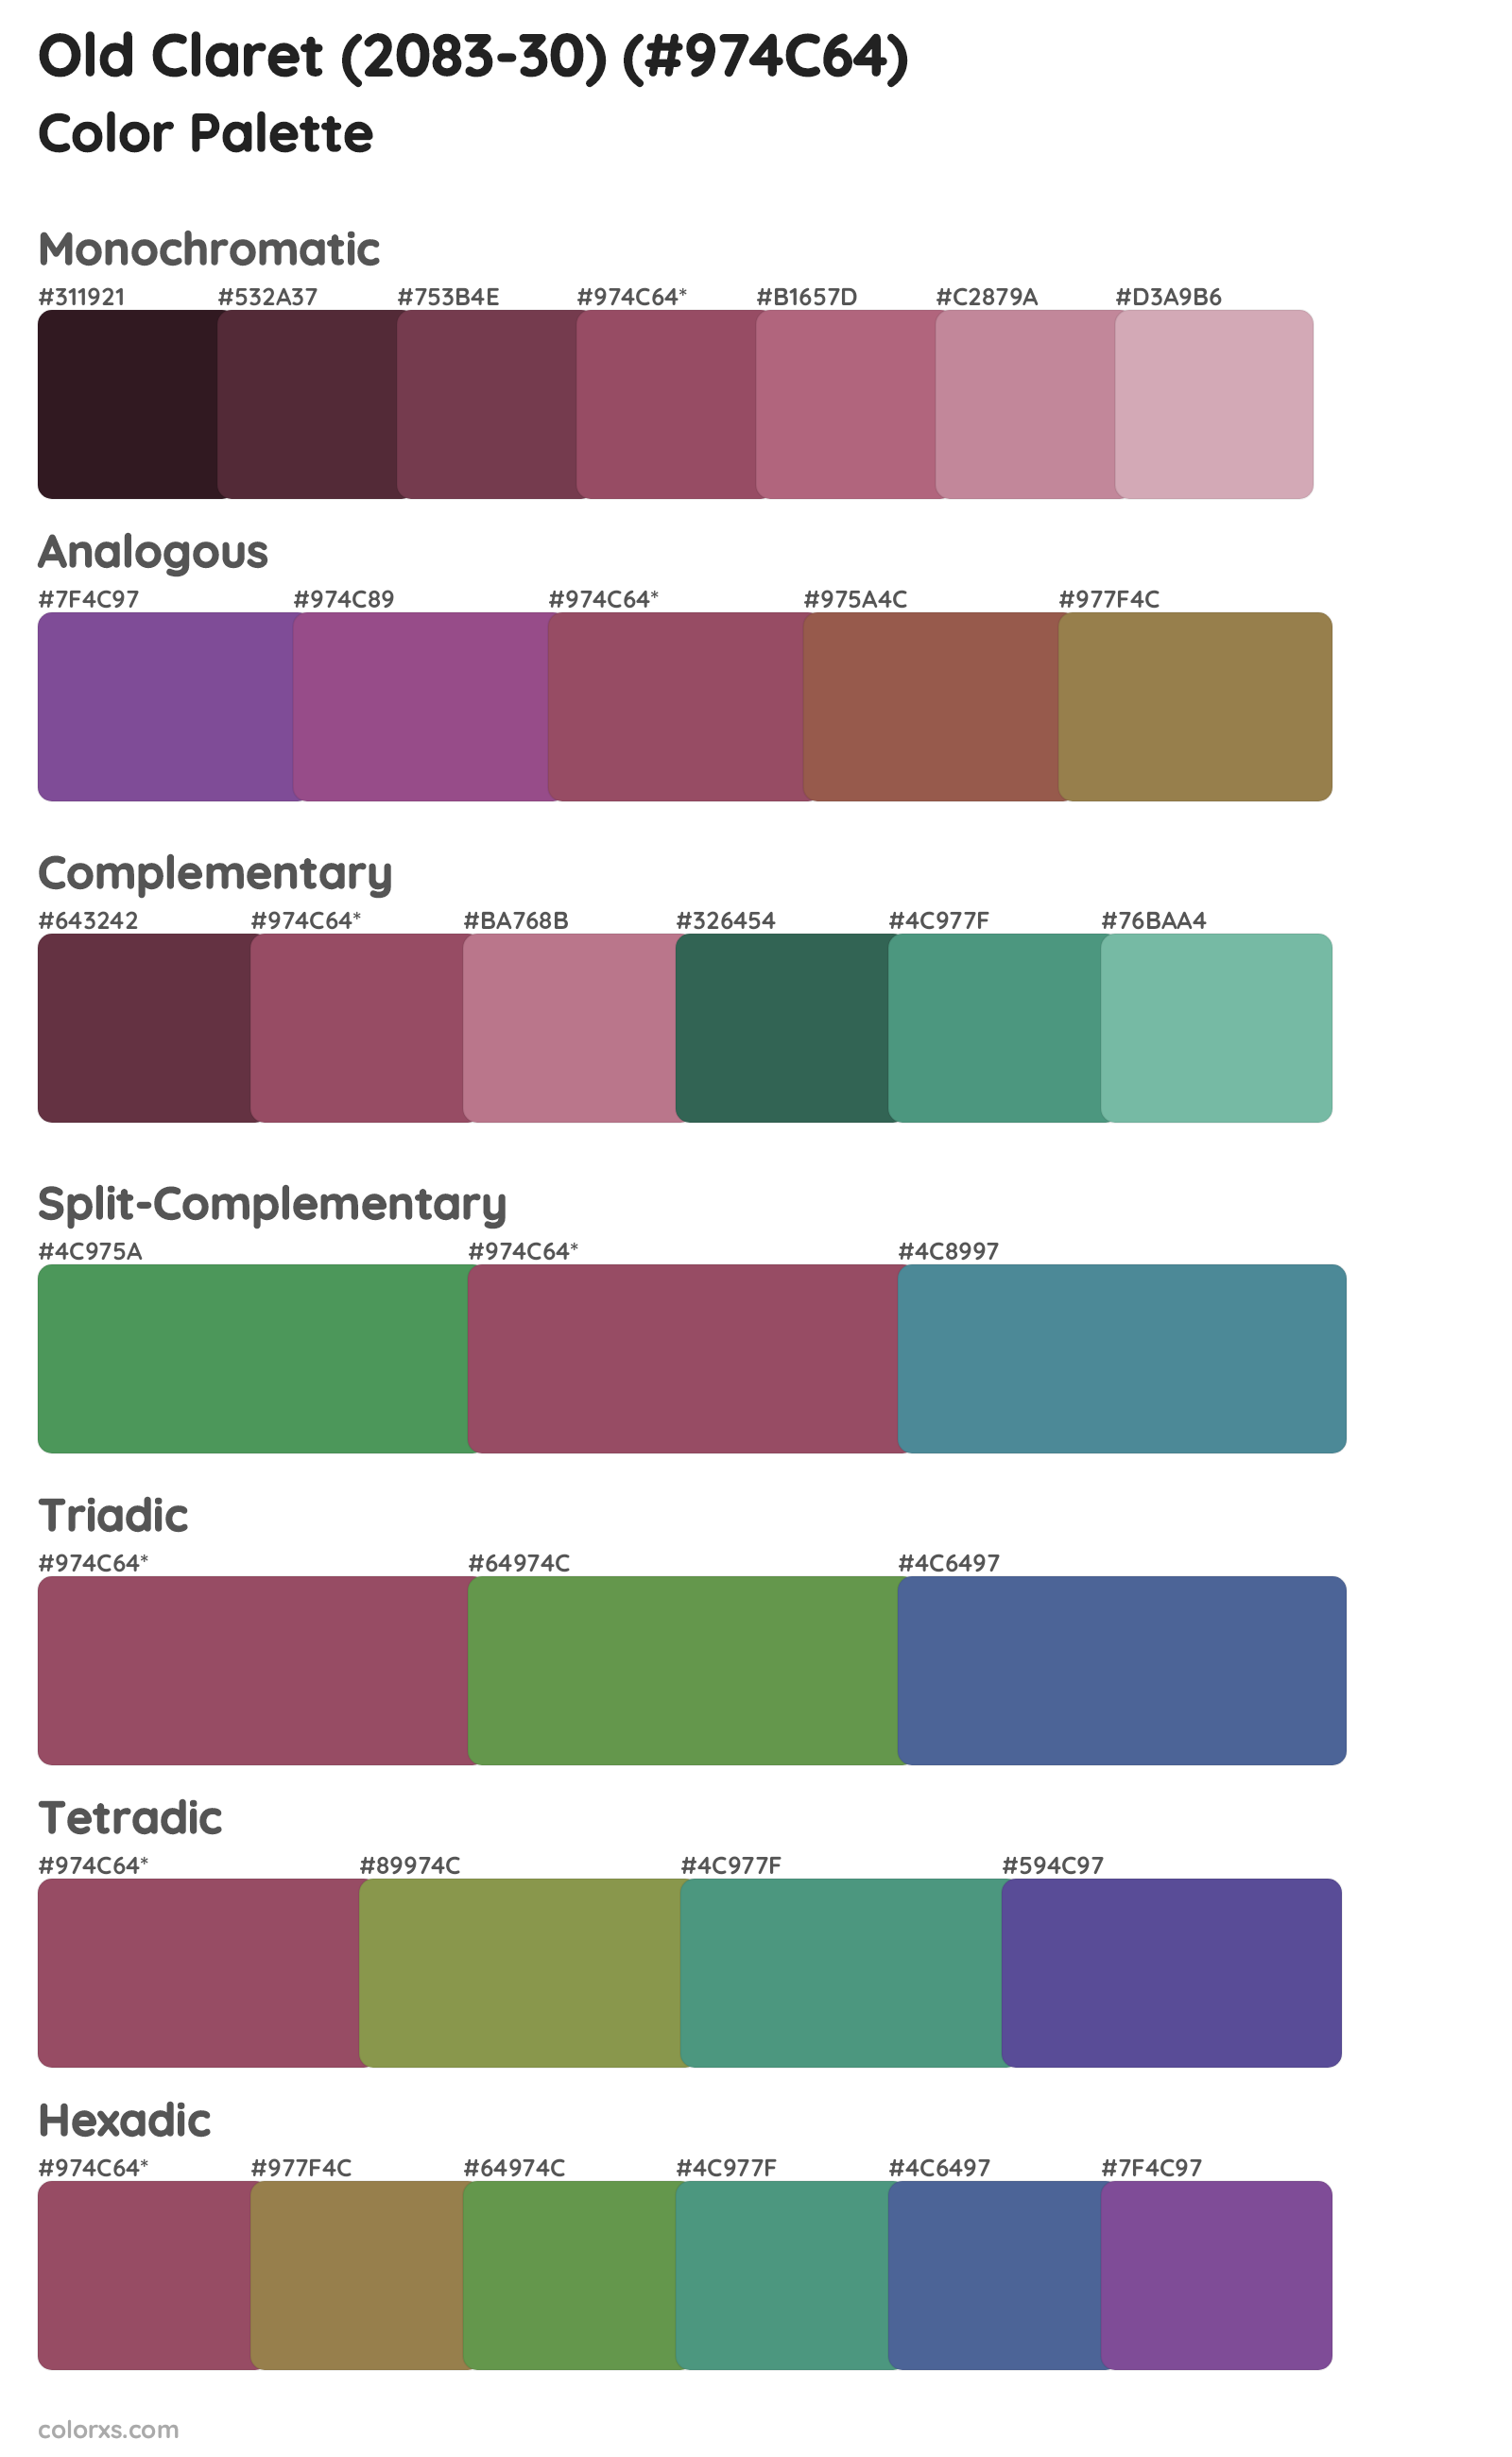 Old Claret (2083-30) Color Scheme Palettes